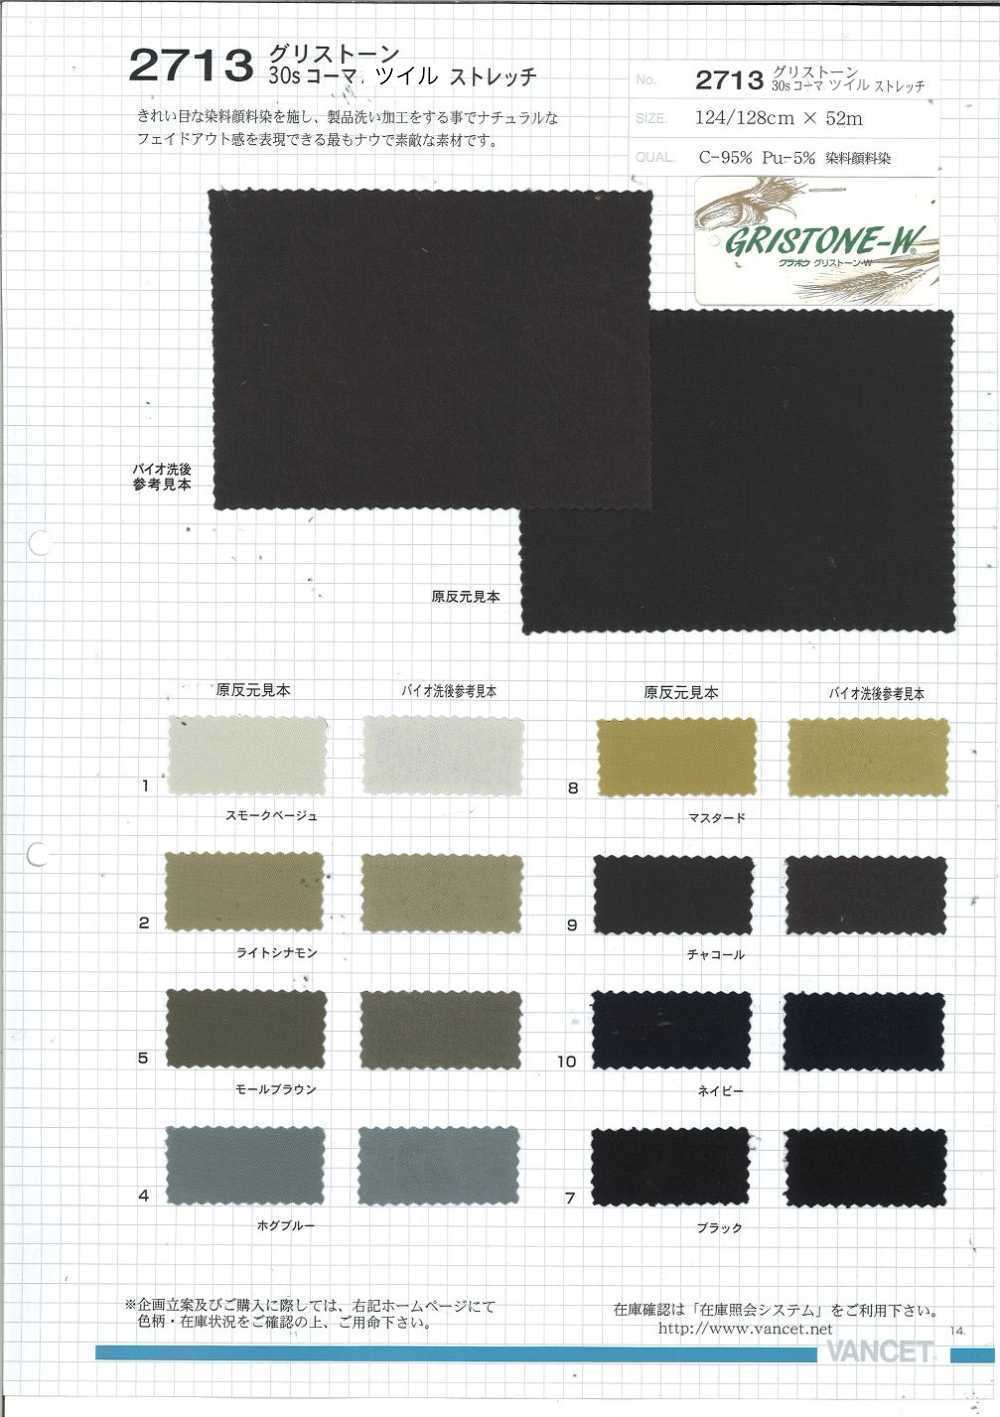 2713 Greasetone 30/- Sarga Peinada Stretch Dye Pigmento Teñido[Fabrica Textil] VANCET